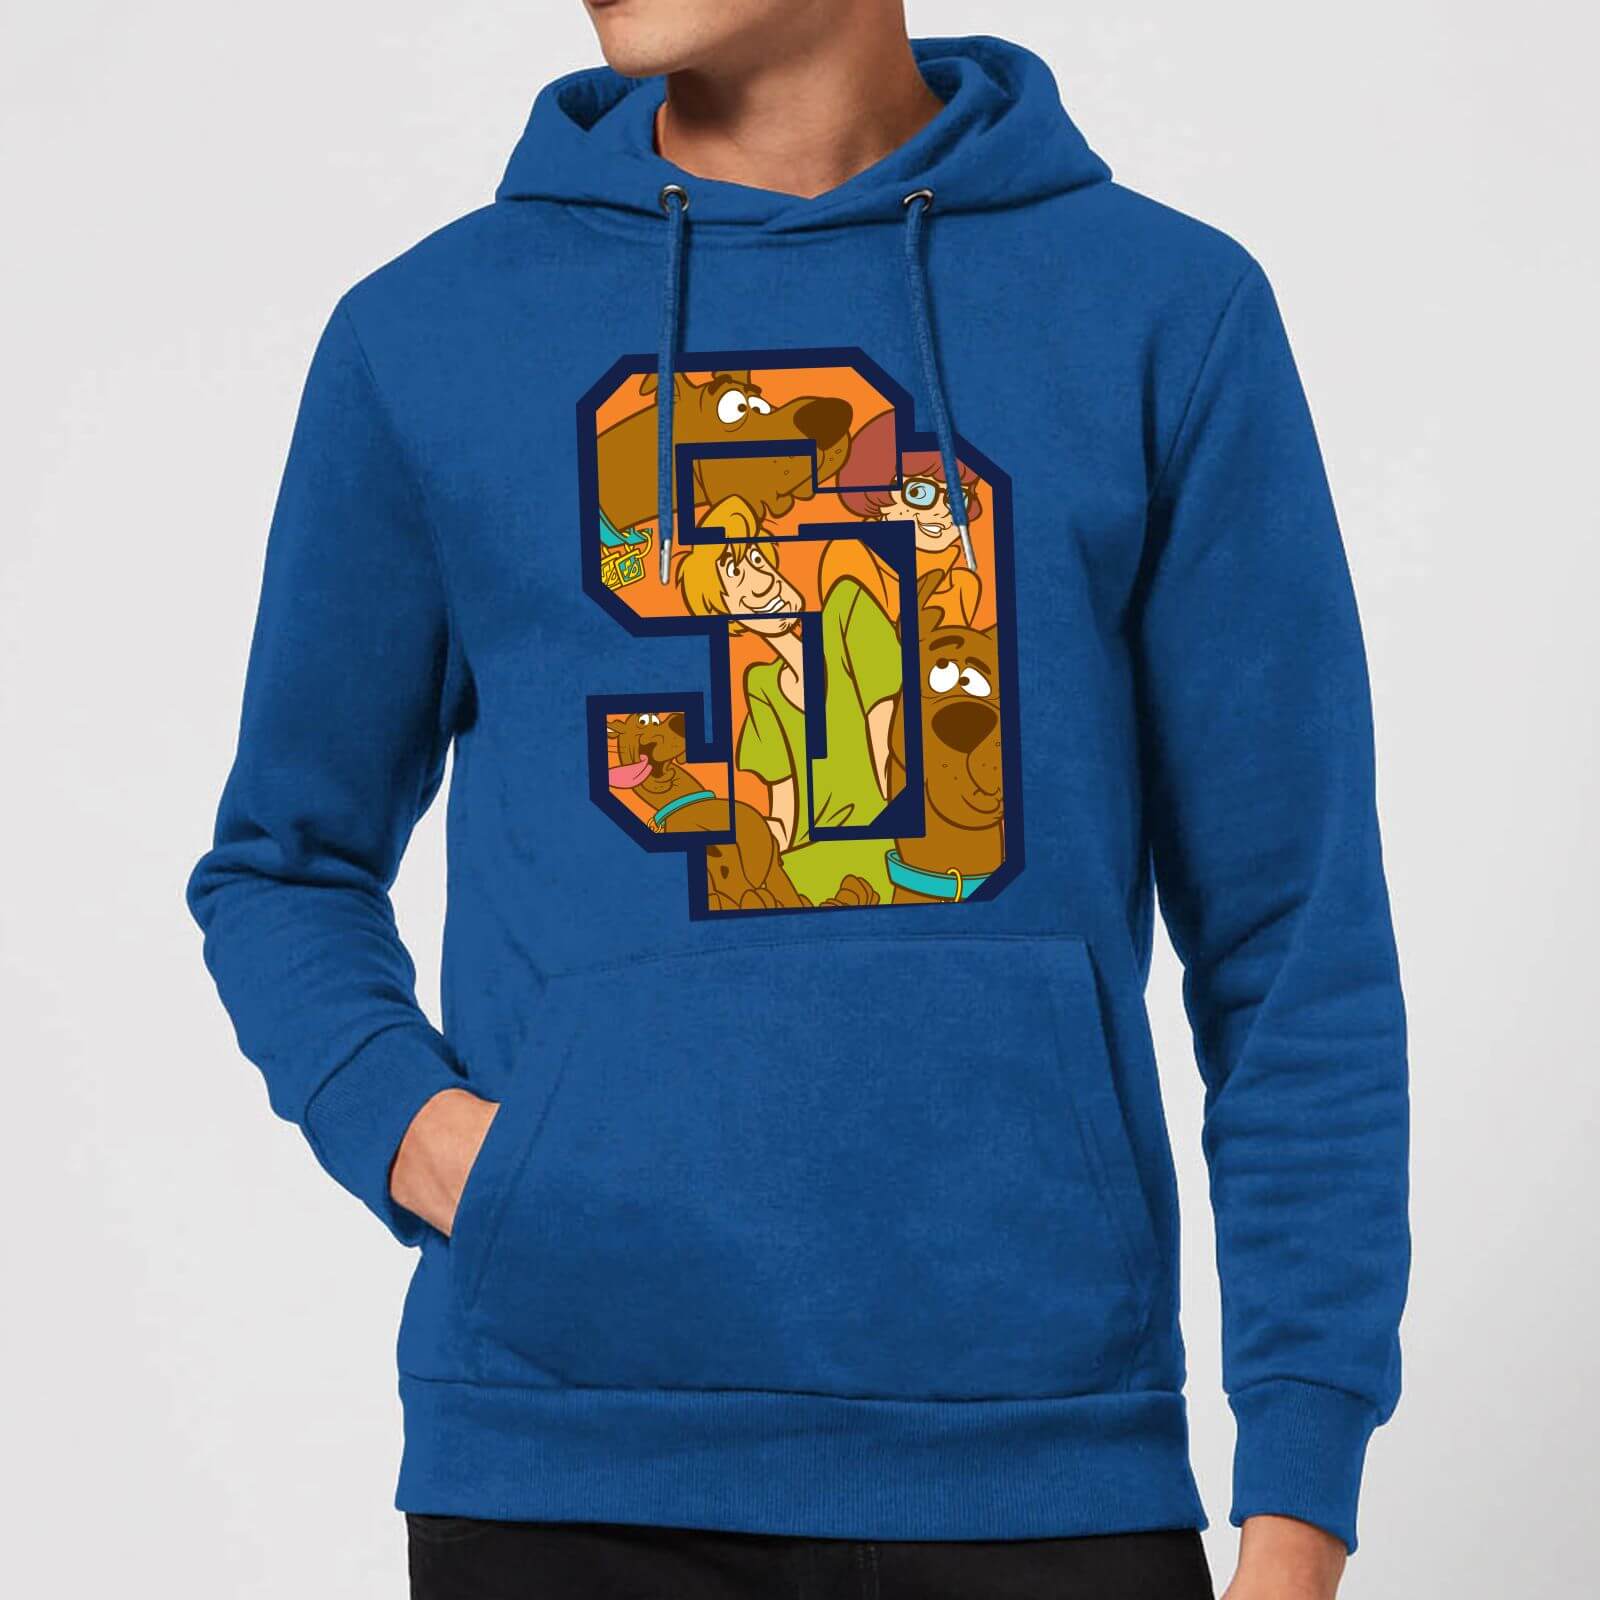 scooby doo hoodie cheap online